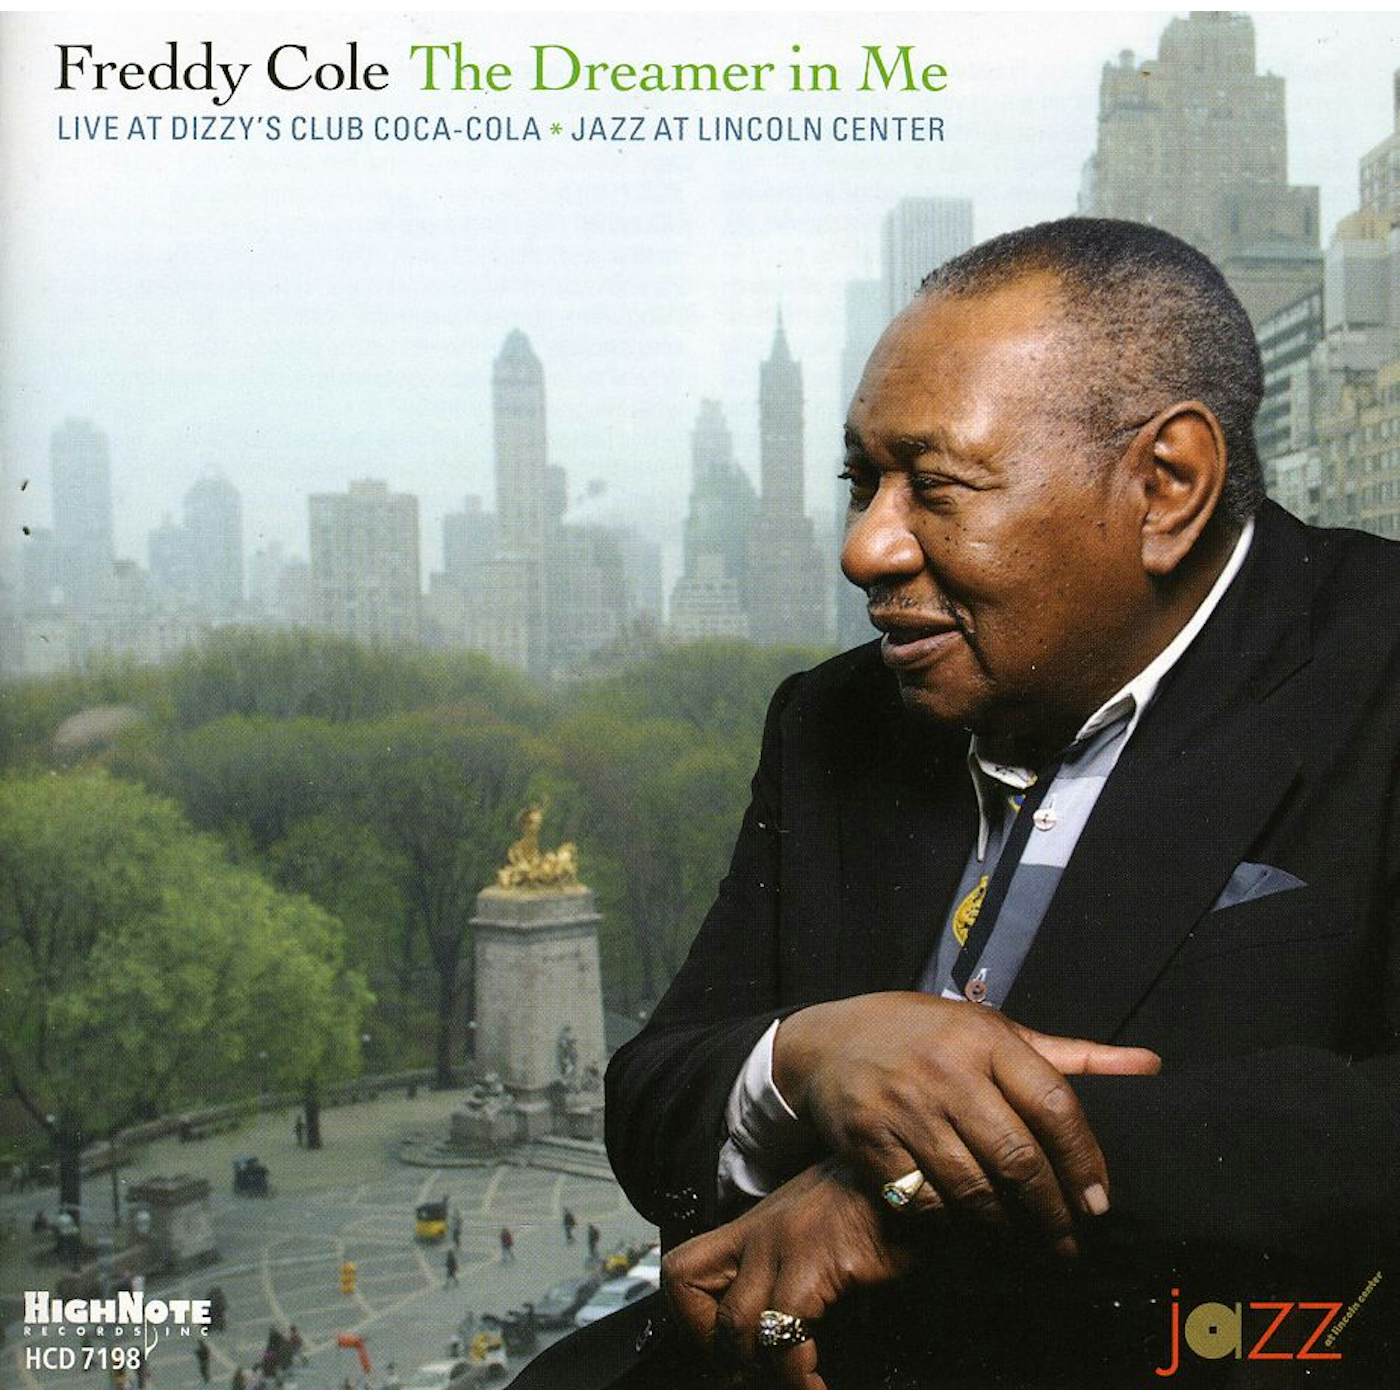 Freddy Cole DREAMER IN ME: LIVE AT DIZZY'S CLUB COCA-COLA CD